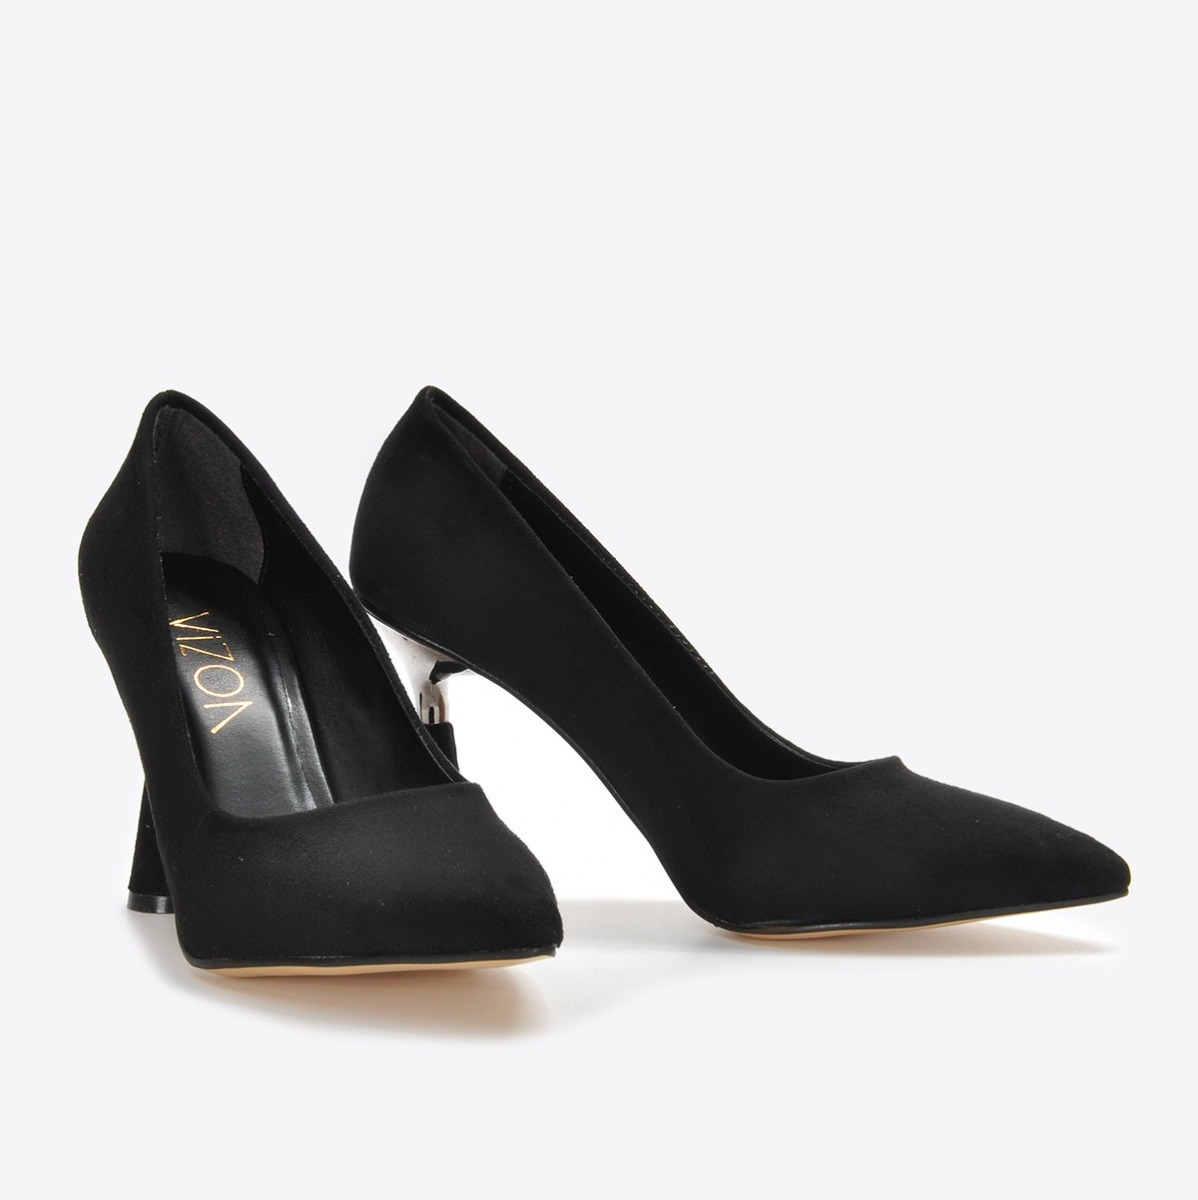 Flo Kadın Siyah Süet Klasik Topuklu Ayakkabı VZN21-037Y. 5